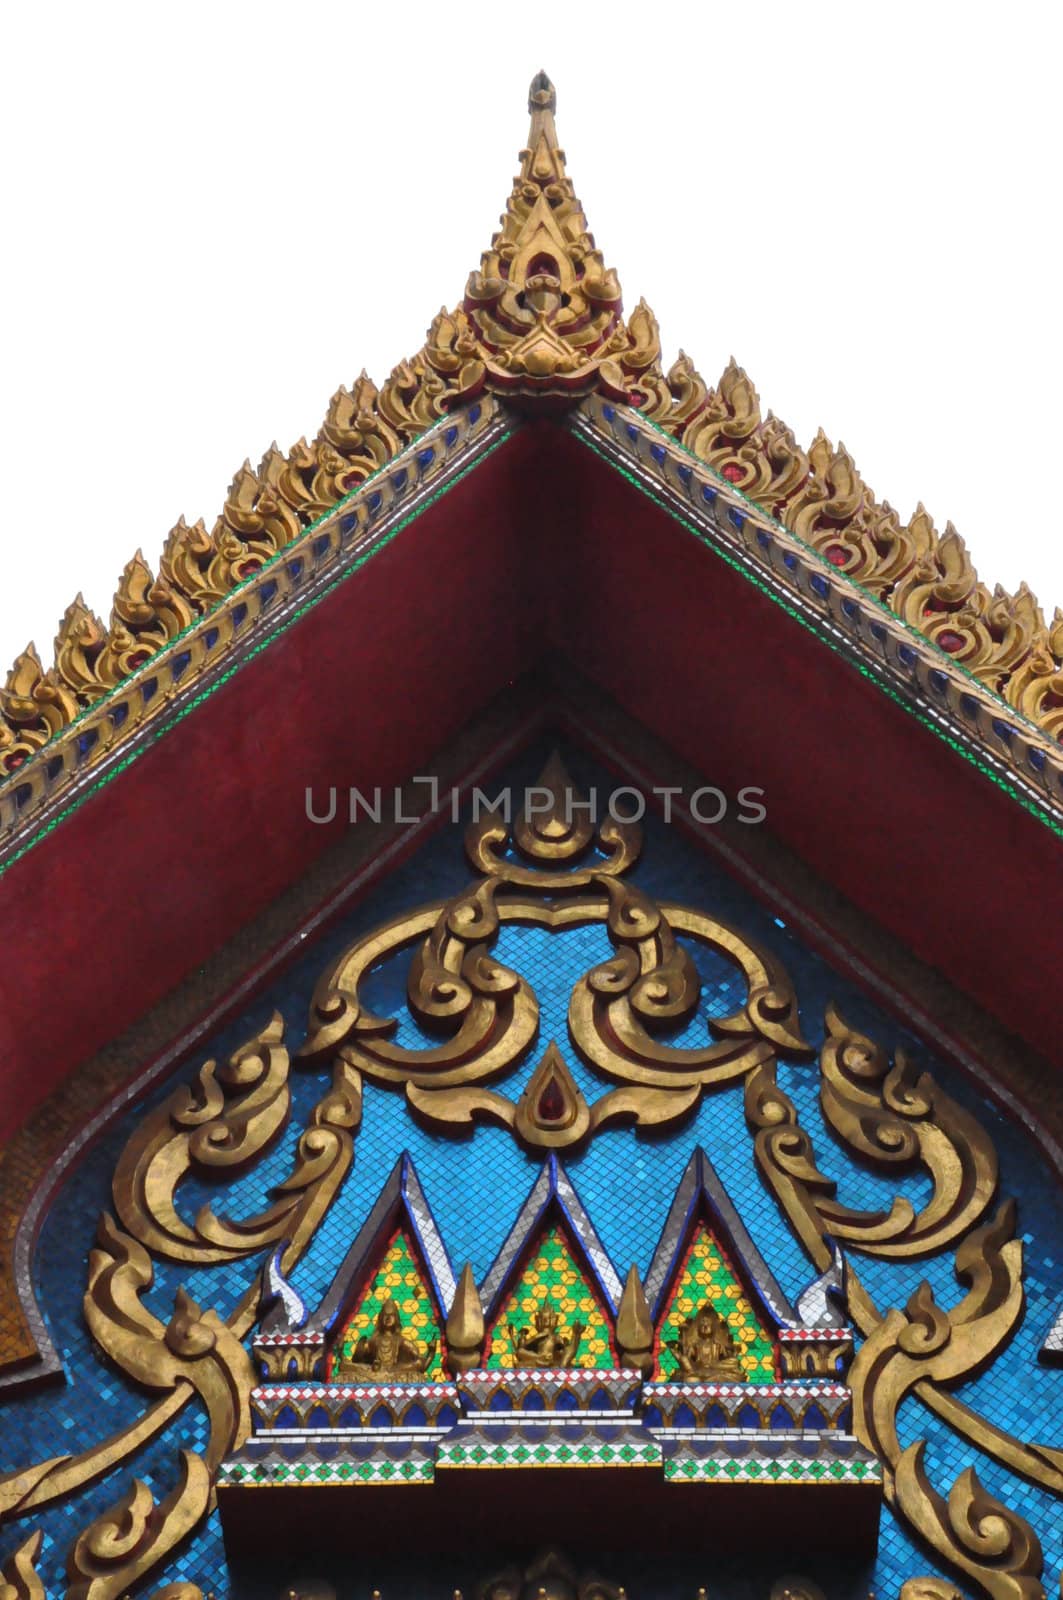 Wat Saket in Bangkok, Thailand by sainaniritu